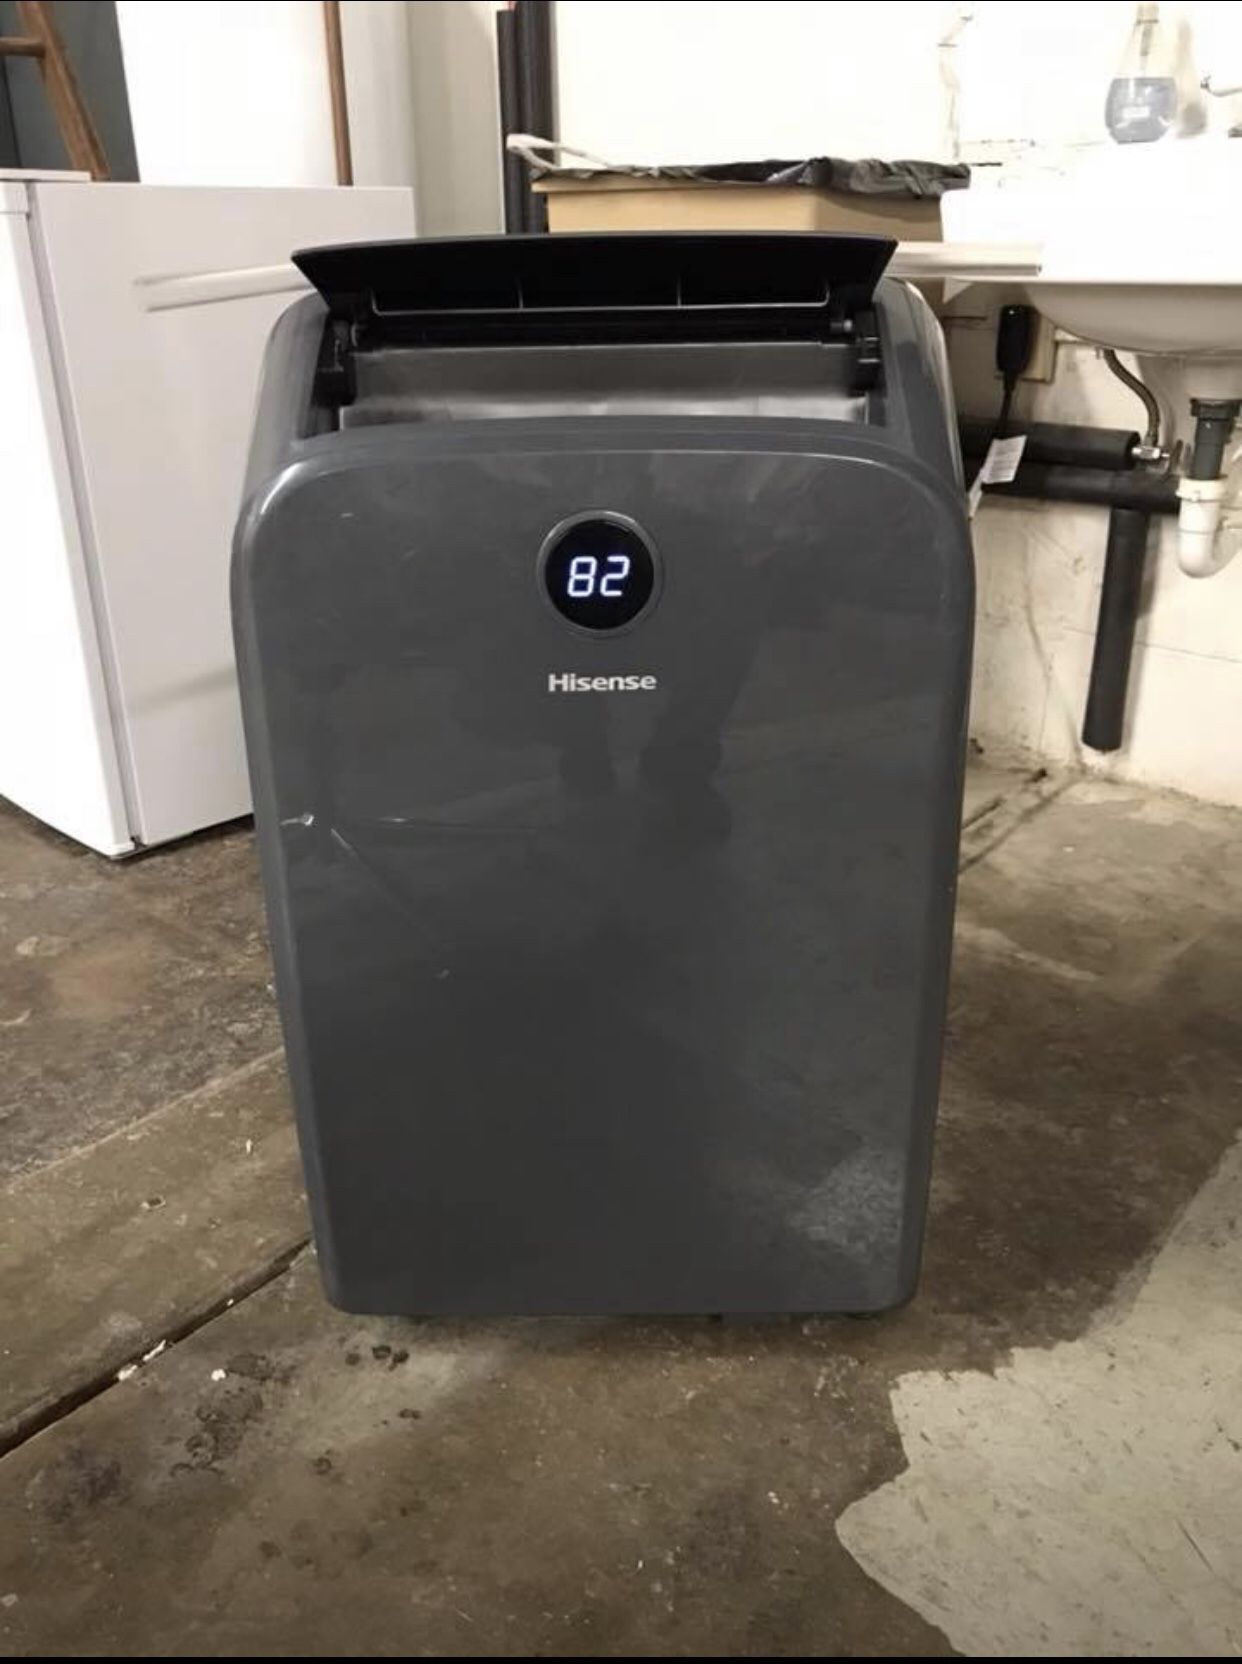 Hisense 400 sq ft 115 Volt Portable Air Conditioner